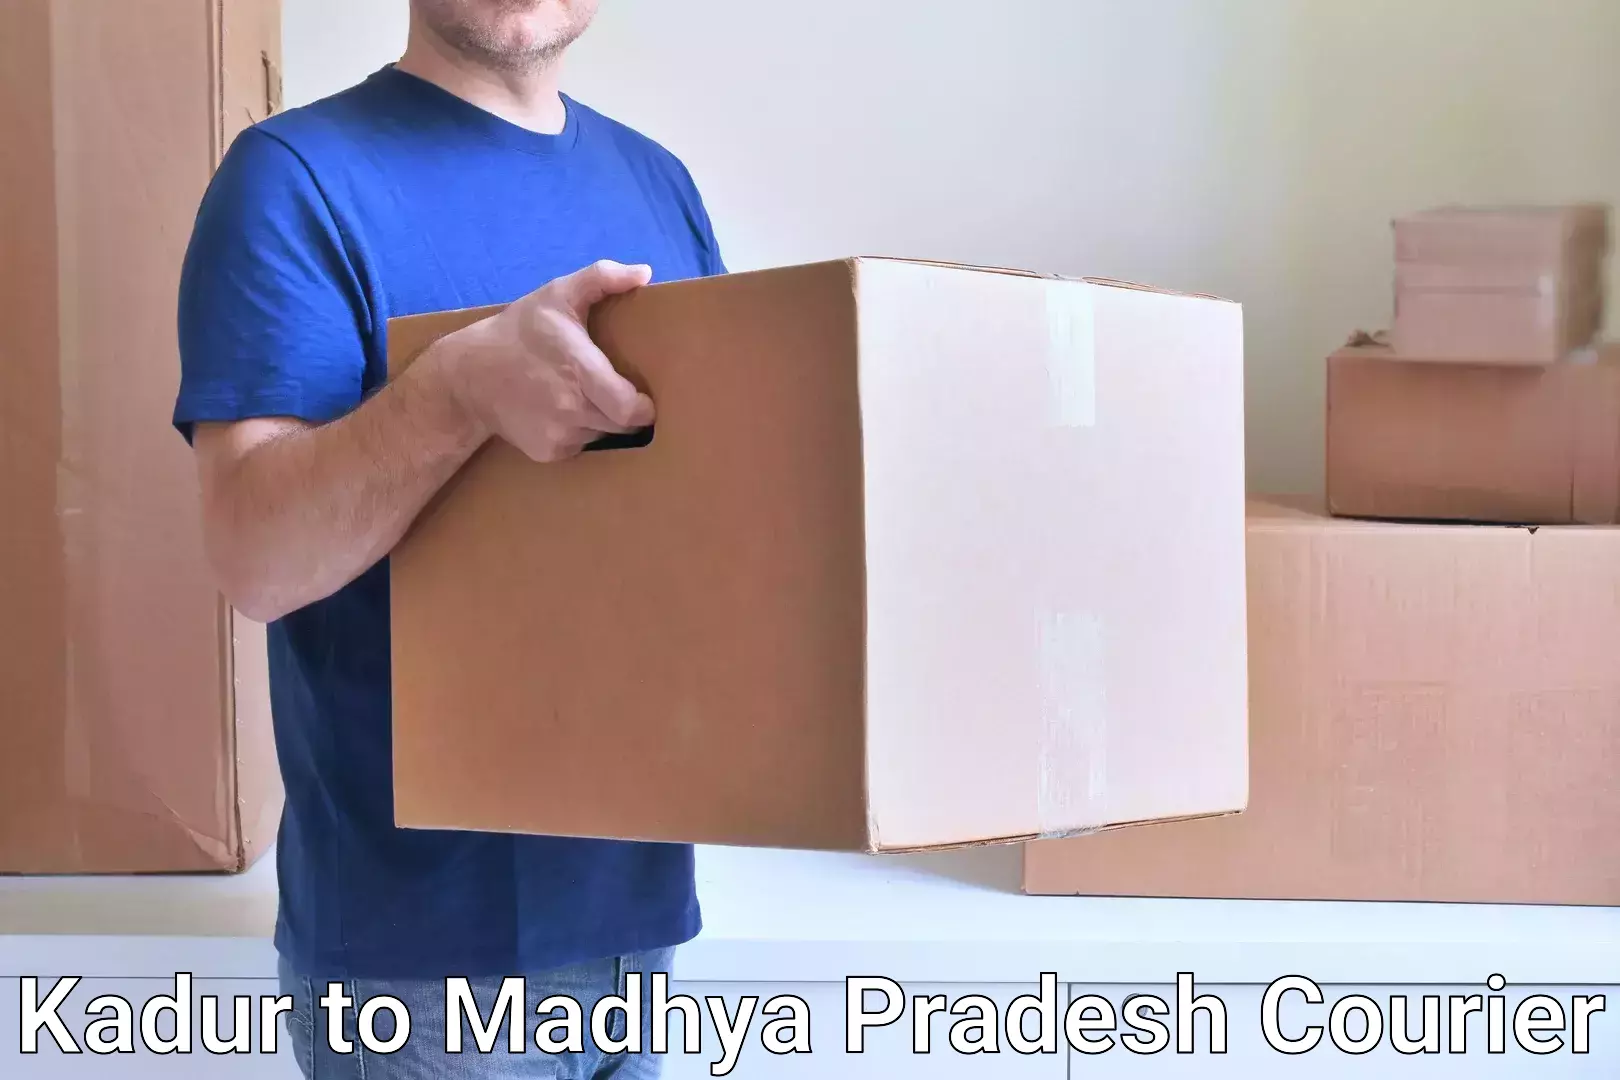 Large package courier Kadur to Tarana Ujjain